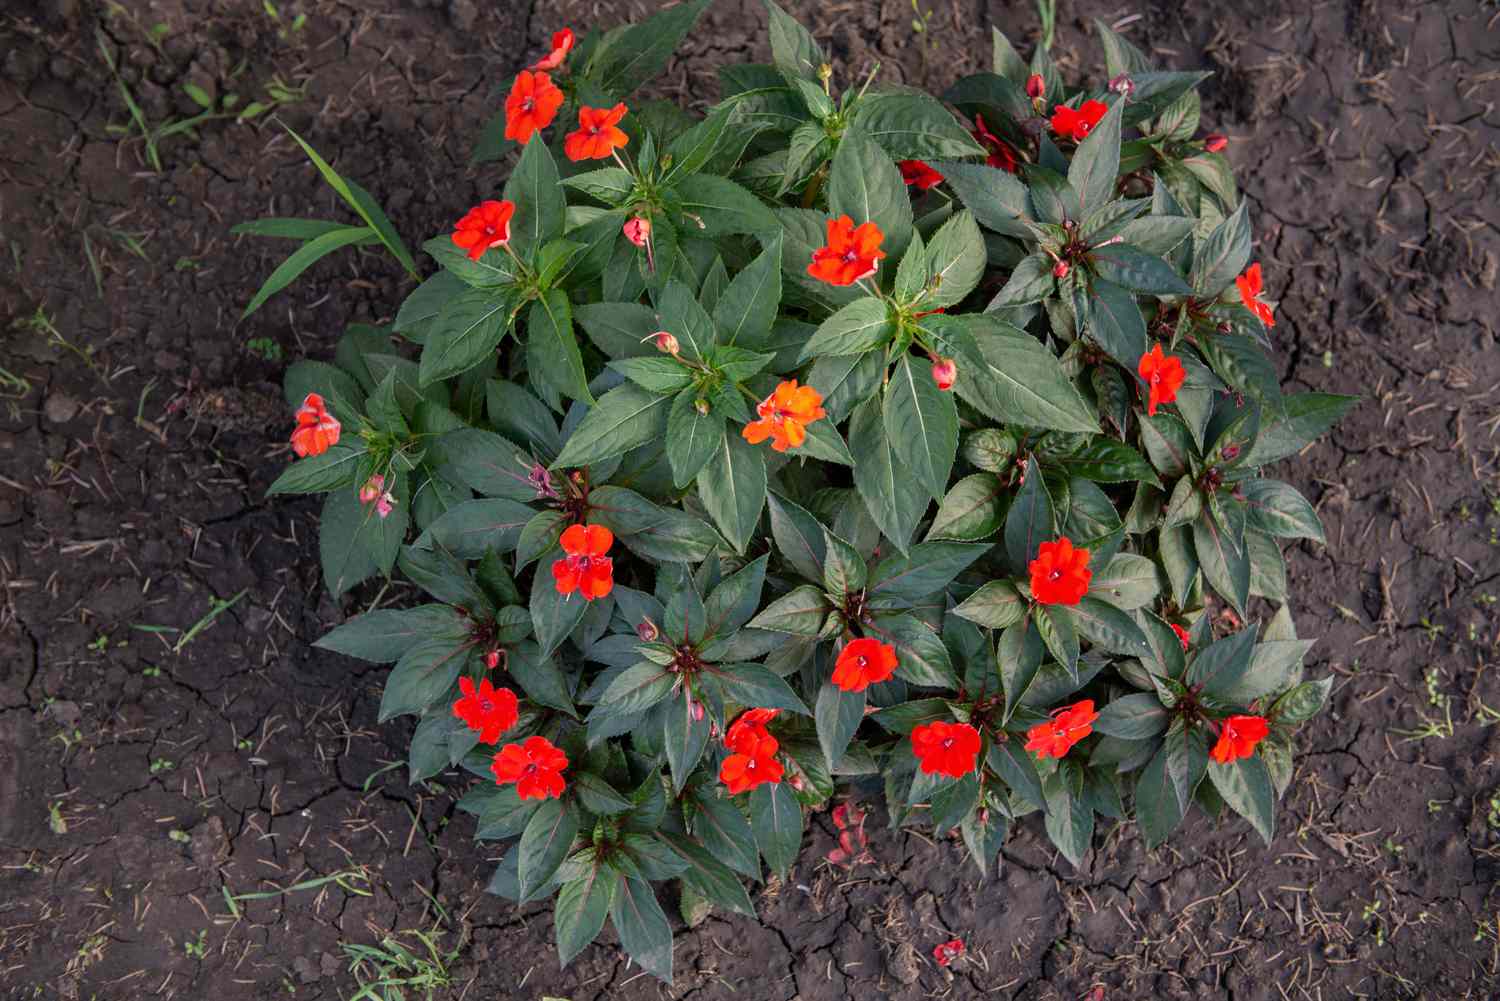 SunPatiens-Strauch von oben mit leuchtend roten und orangefarbenen Blüten, umgeben von einem Blätterbüschel